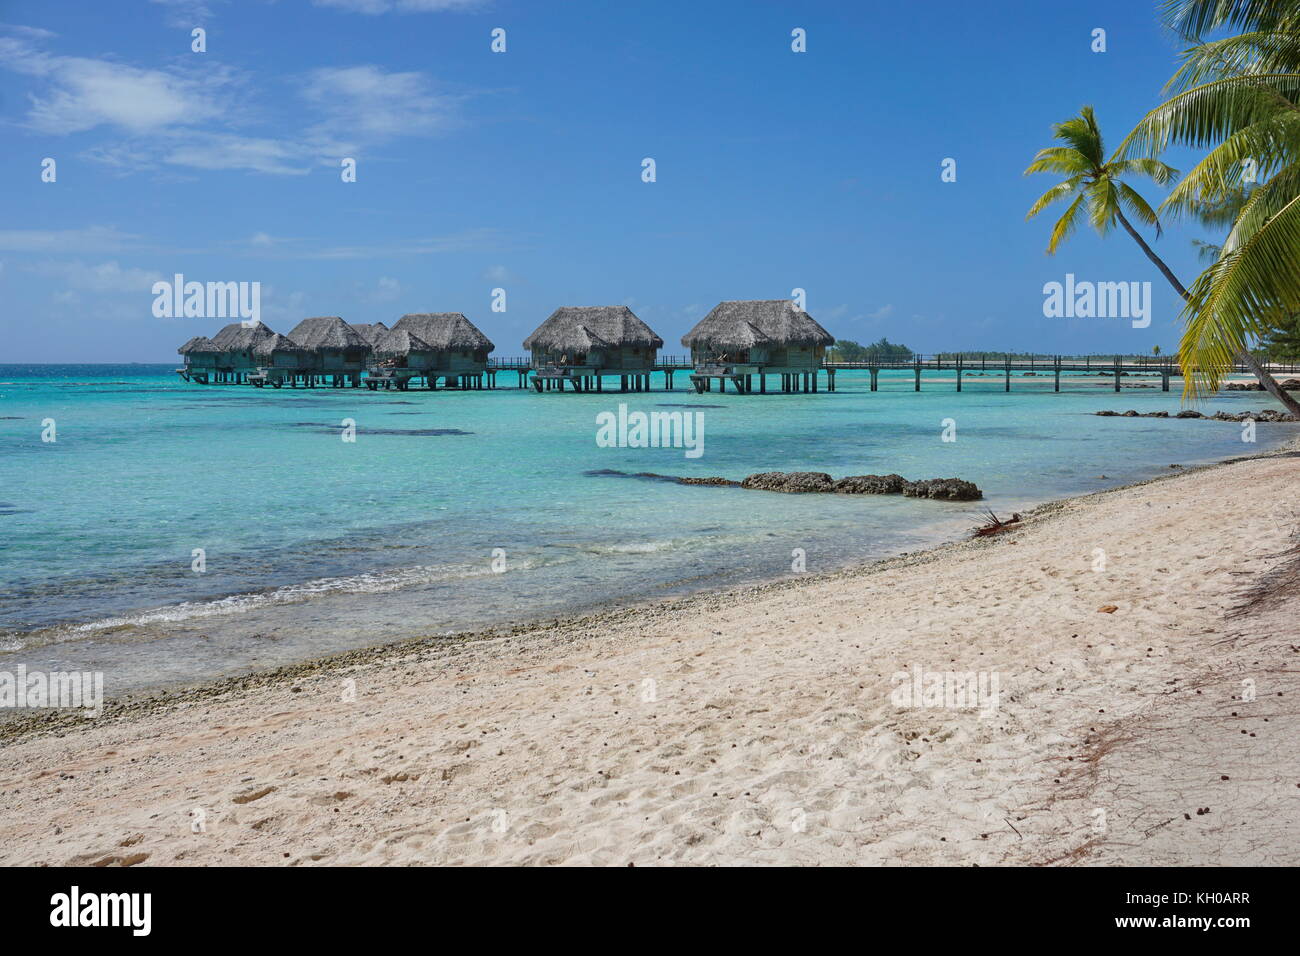 Tropischen Sandstrand mit strohgedeckten Bungalows auf Stelzen in der Lagune, Tikehau Atoll, tuamotus, Französisch-Polynesien, South Pacific Ocean, Ozeanien Stockfoto